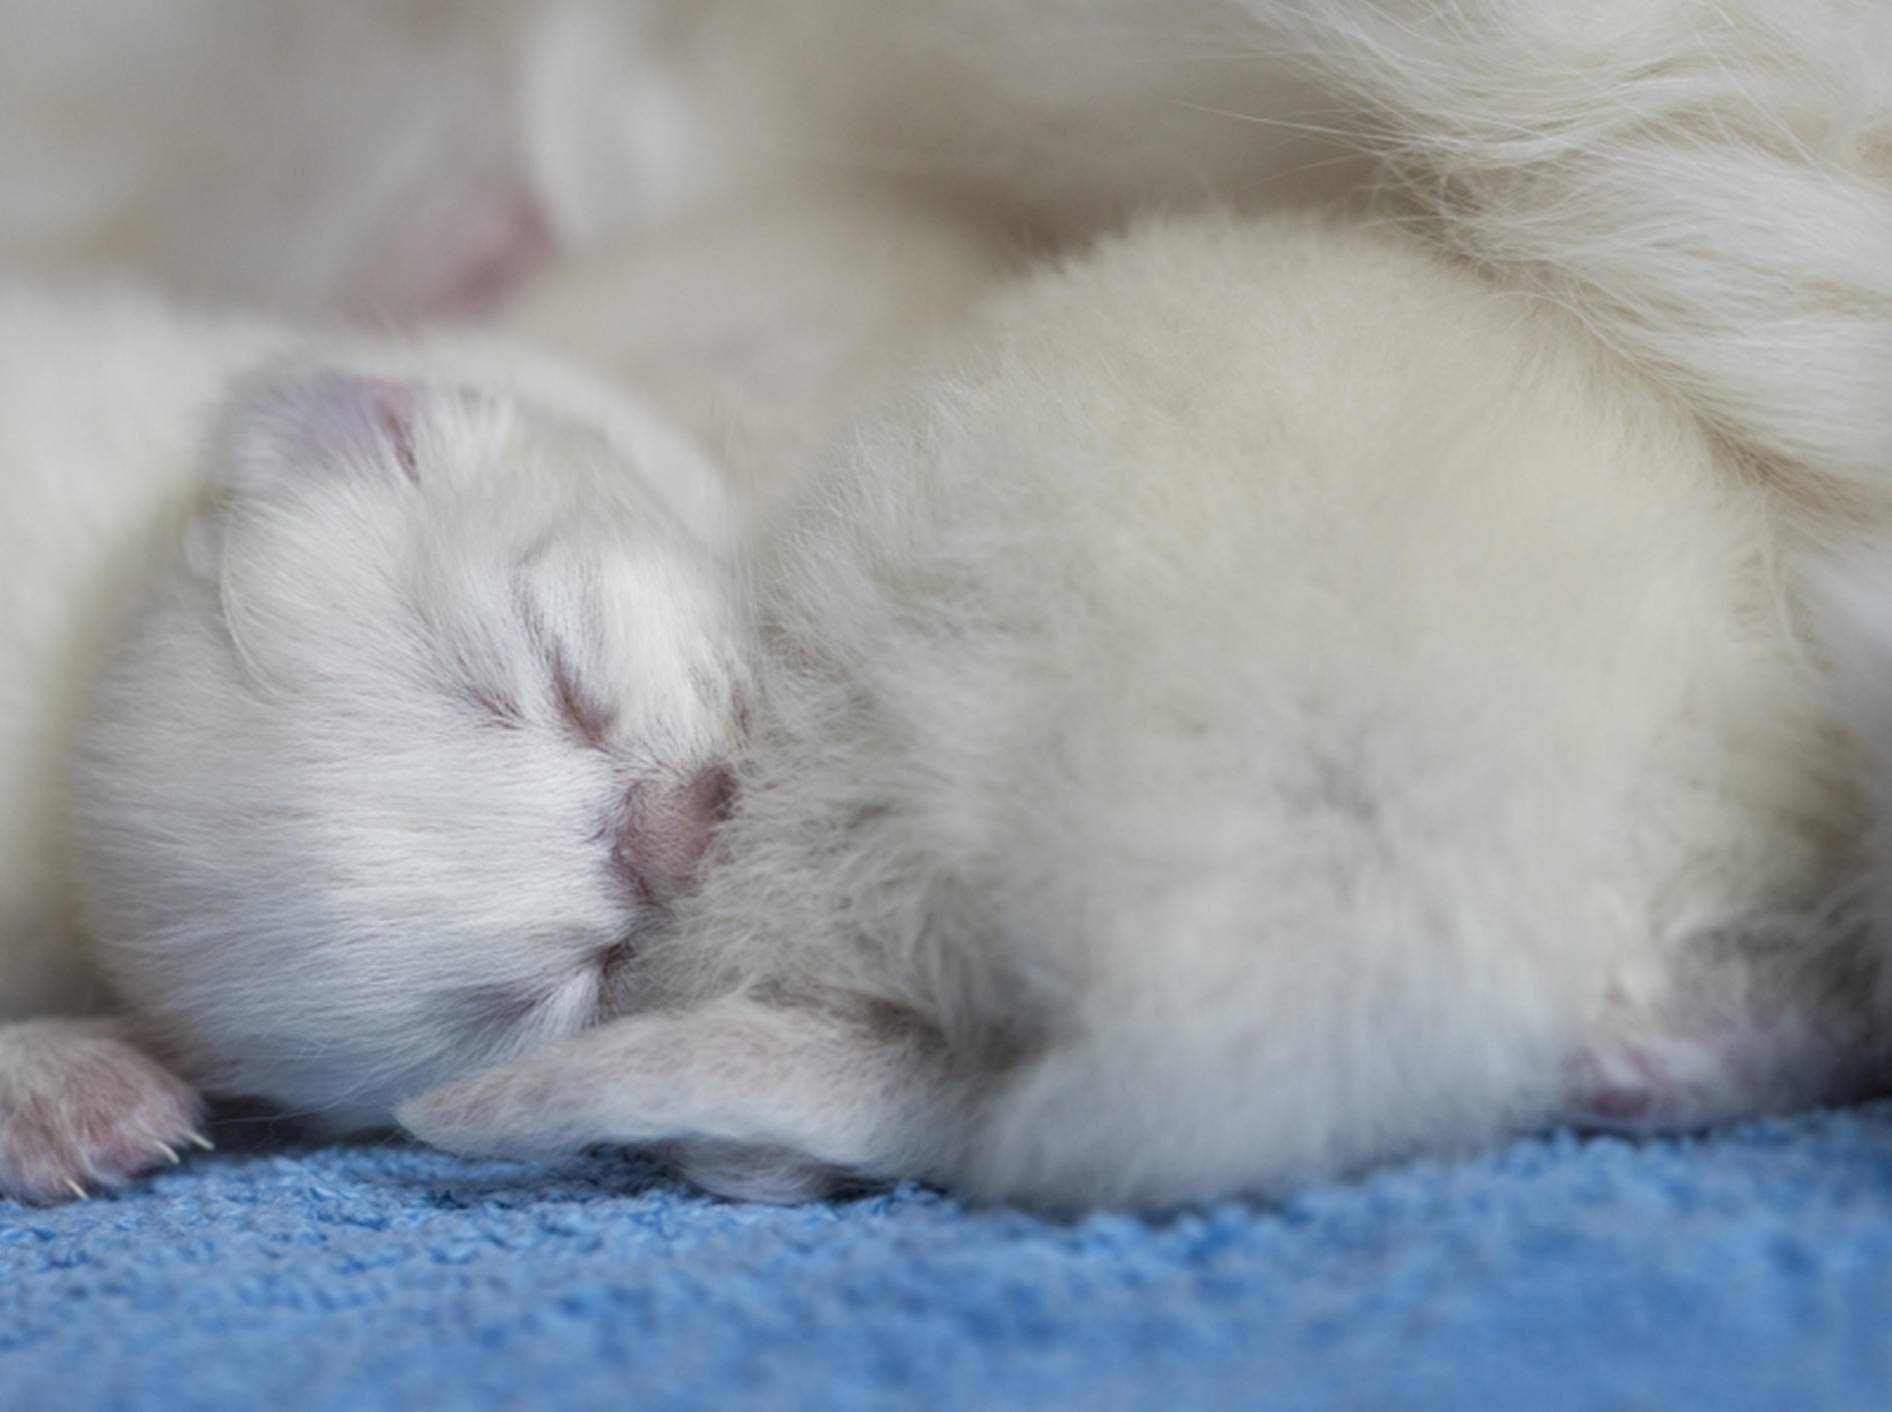 Diese winzigkleine Baby-Ragdoll-Katze fühlt sich bei ihrer Mama wohl und geborgen – Shutterstock / cath5